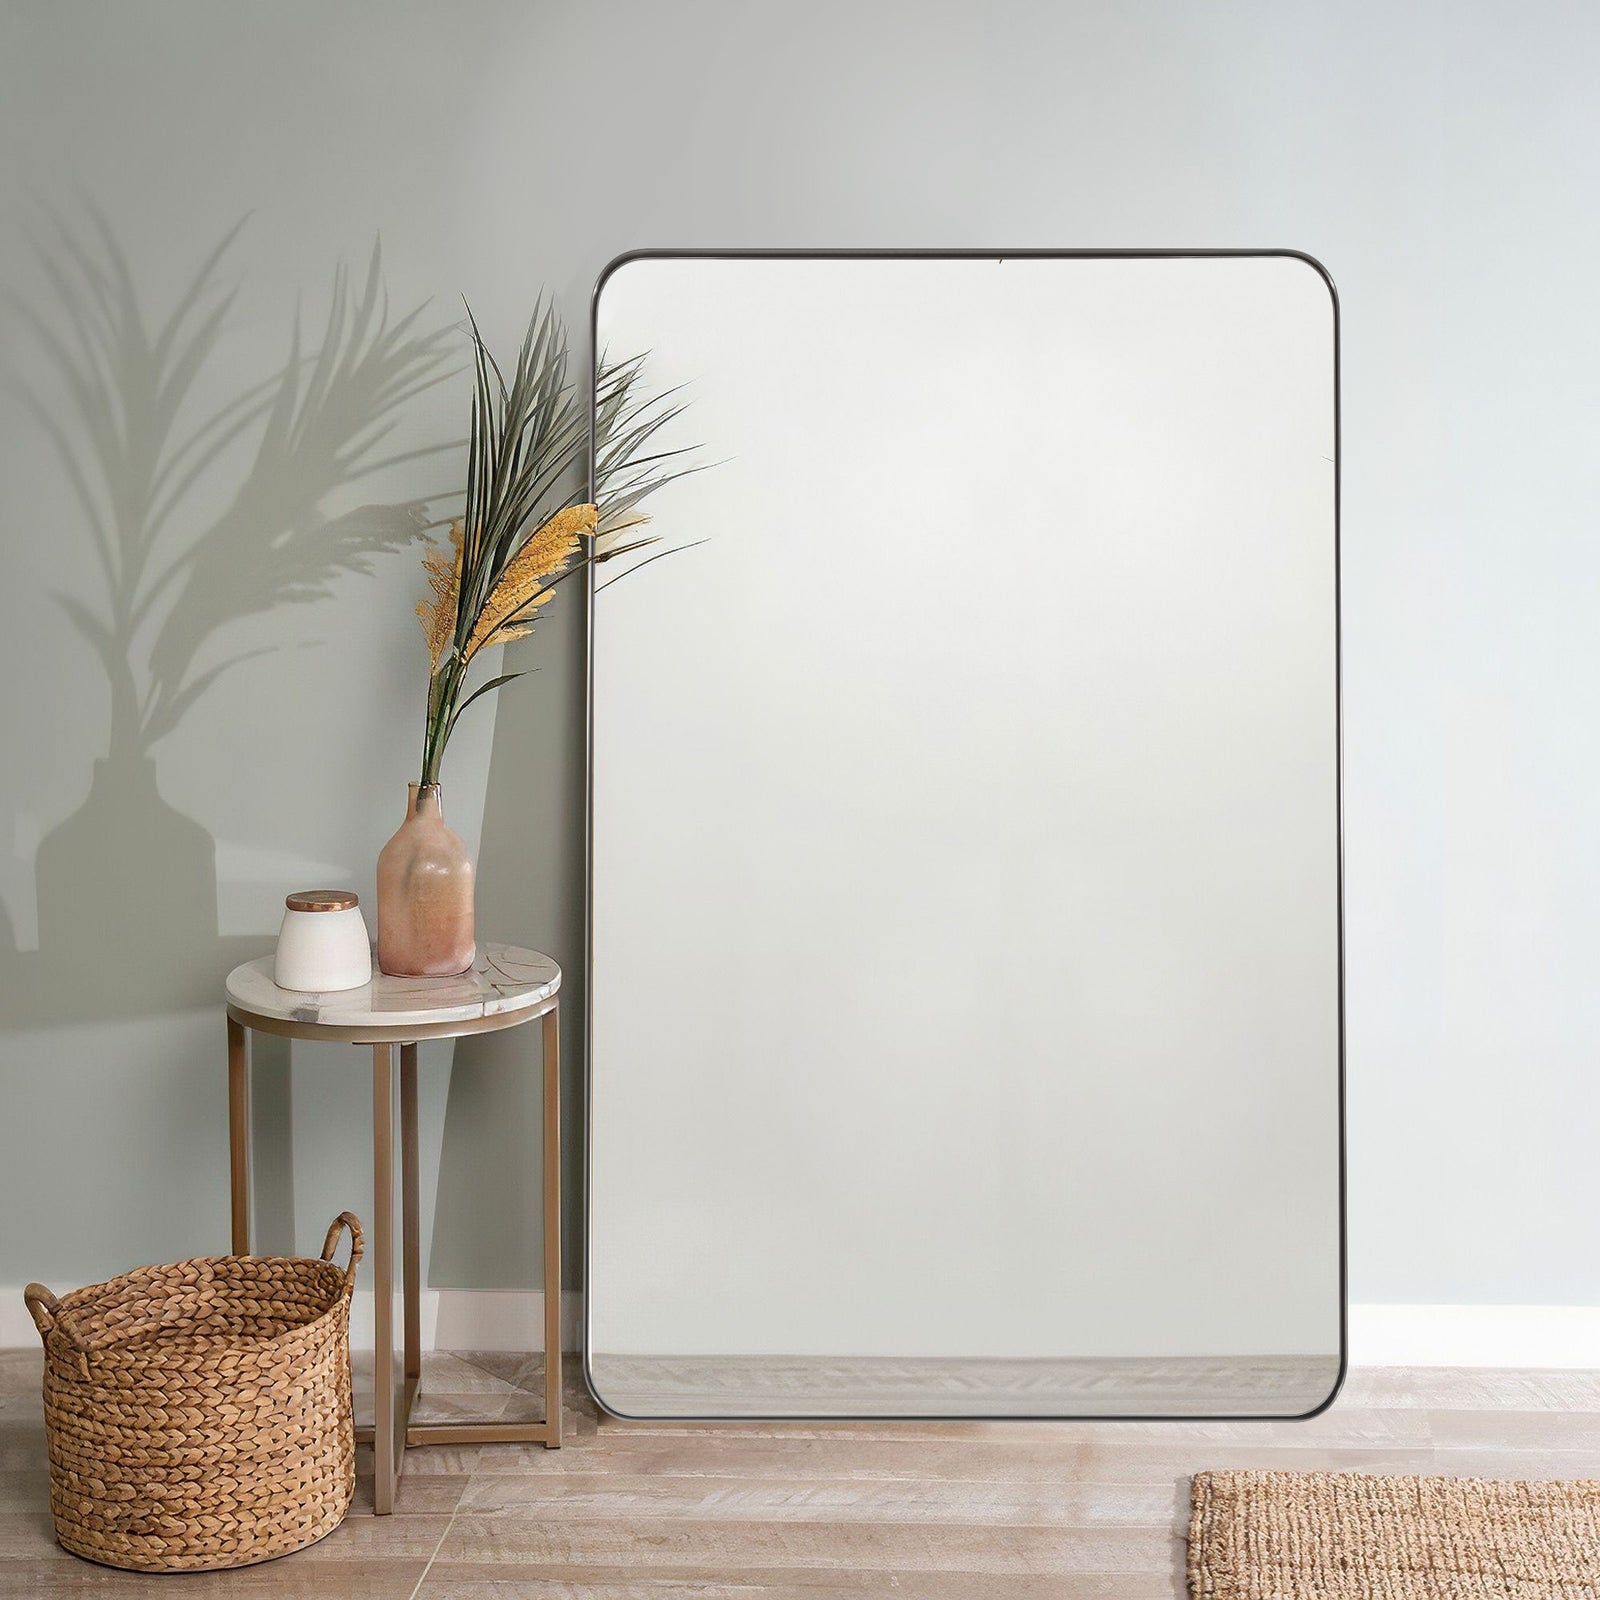 Full Length Mirror for Wall Full Body Rectangle Long Vanity Mirror | Stainless Steel Frame